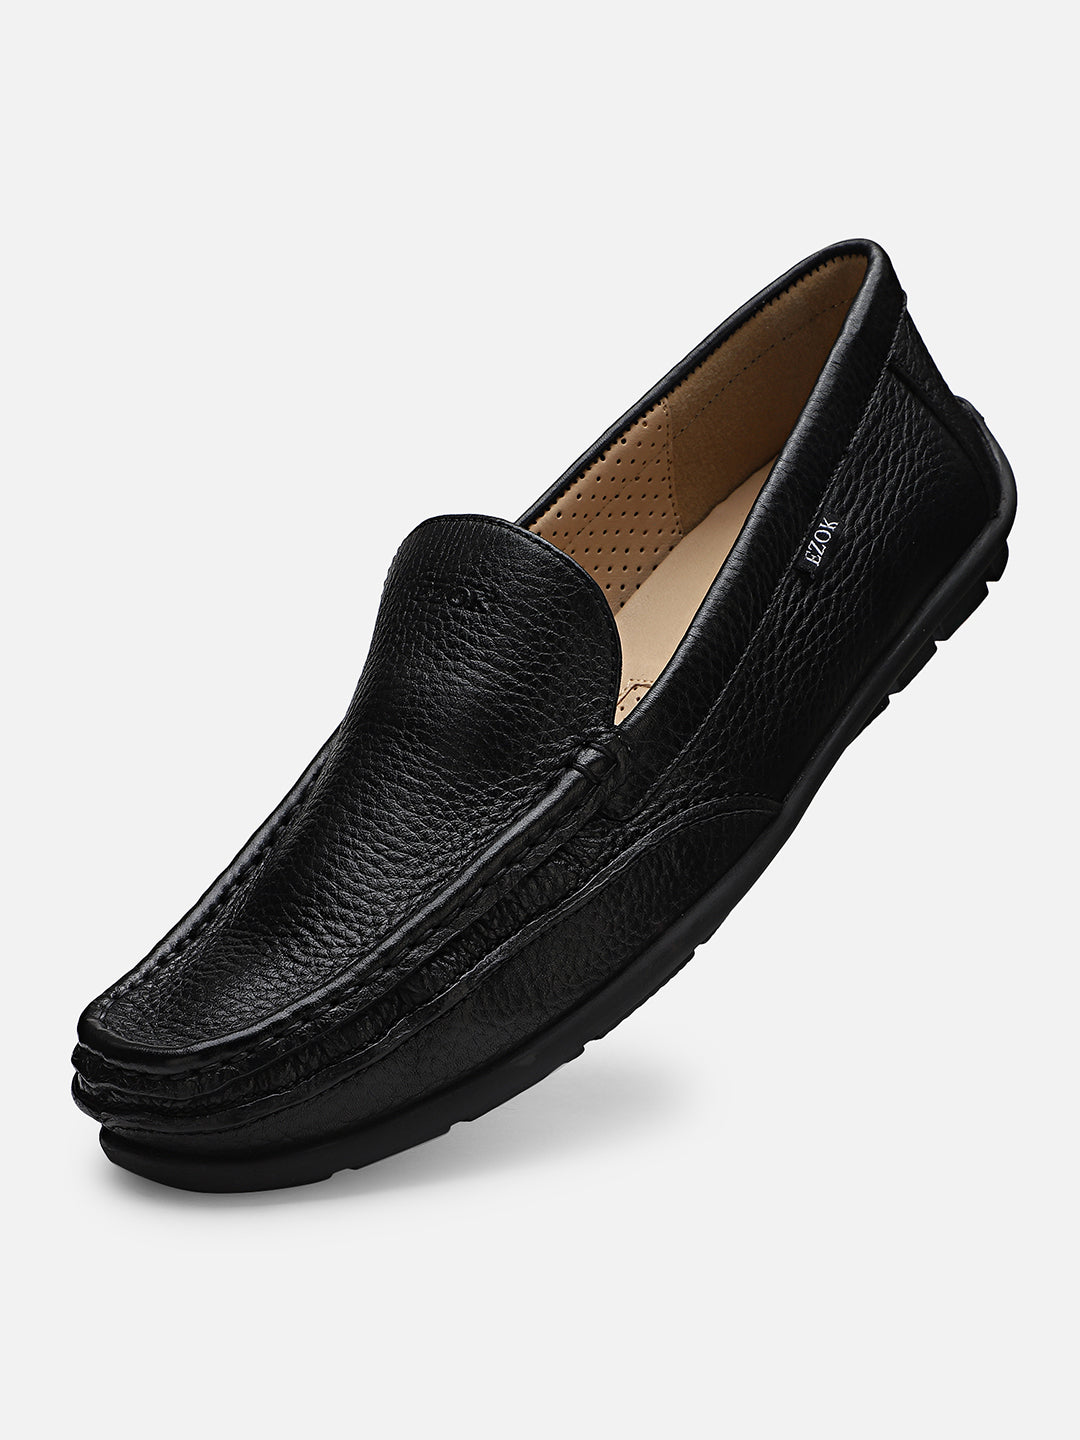 Ezok Men Black Leather Casual Shoes